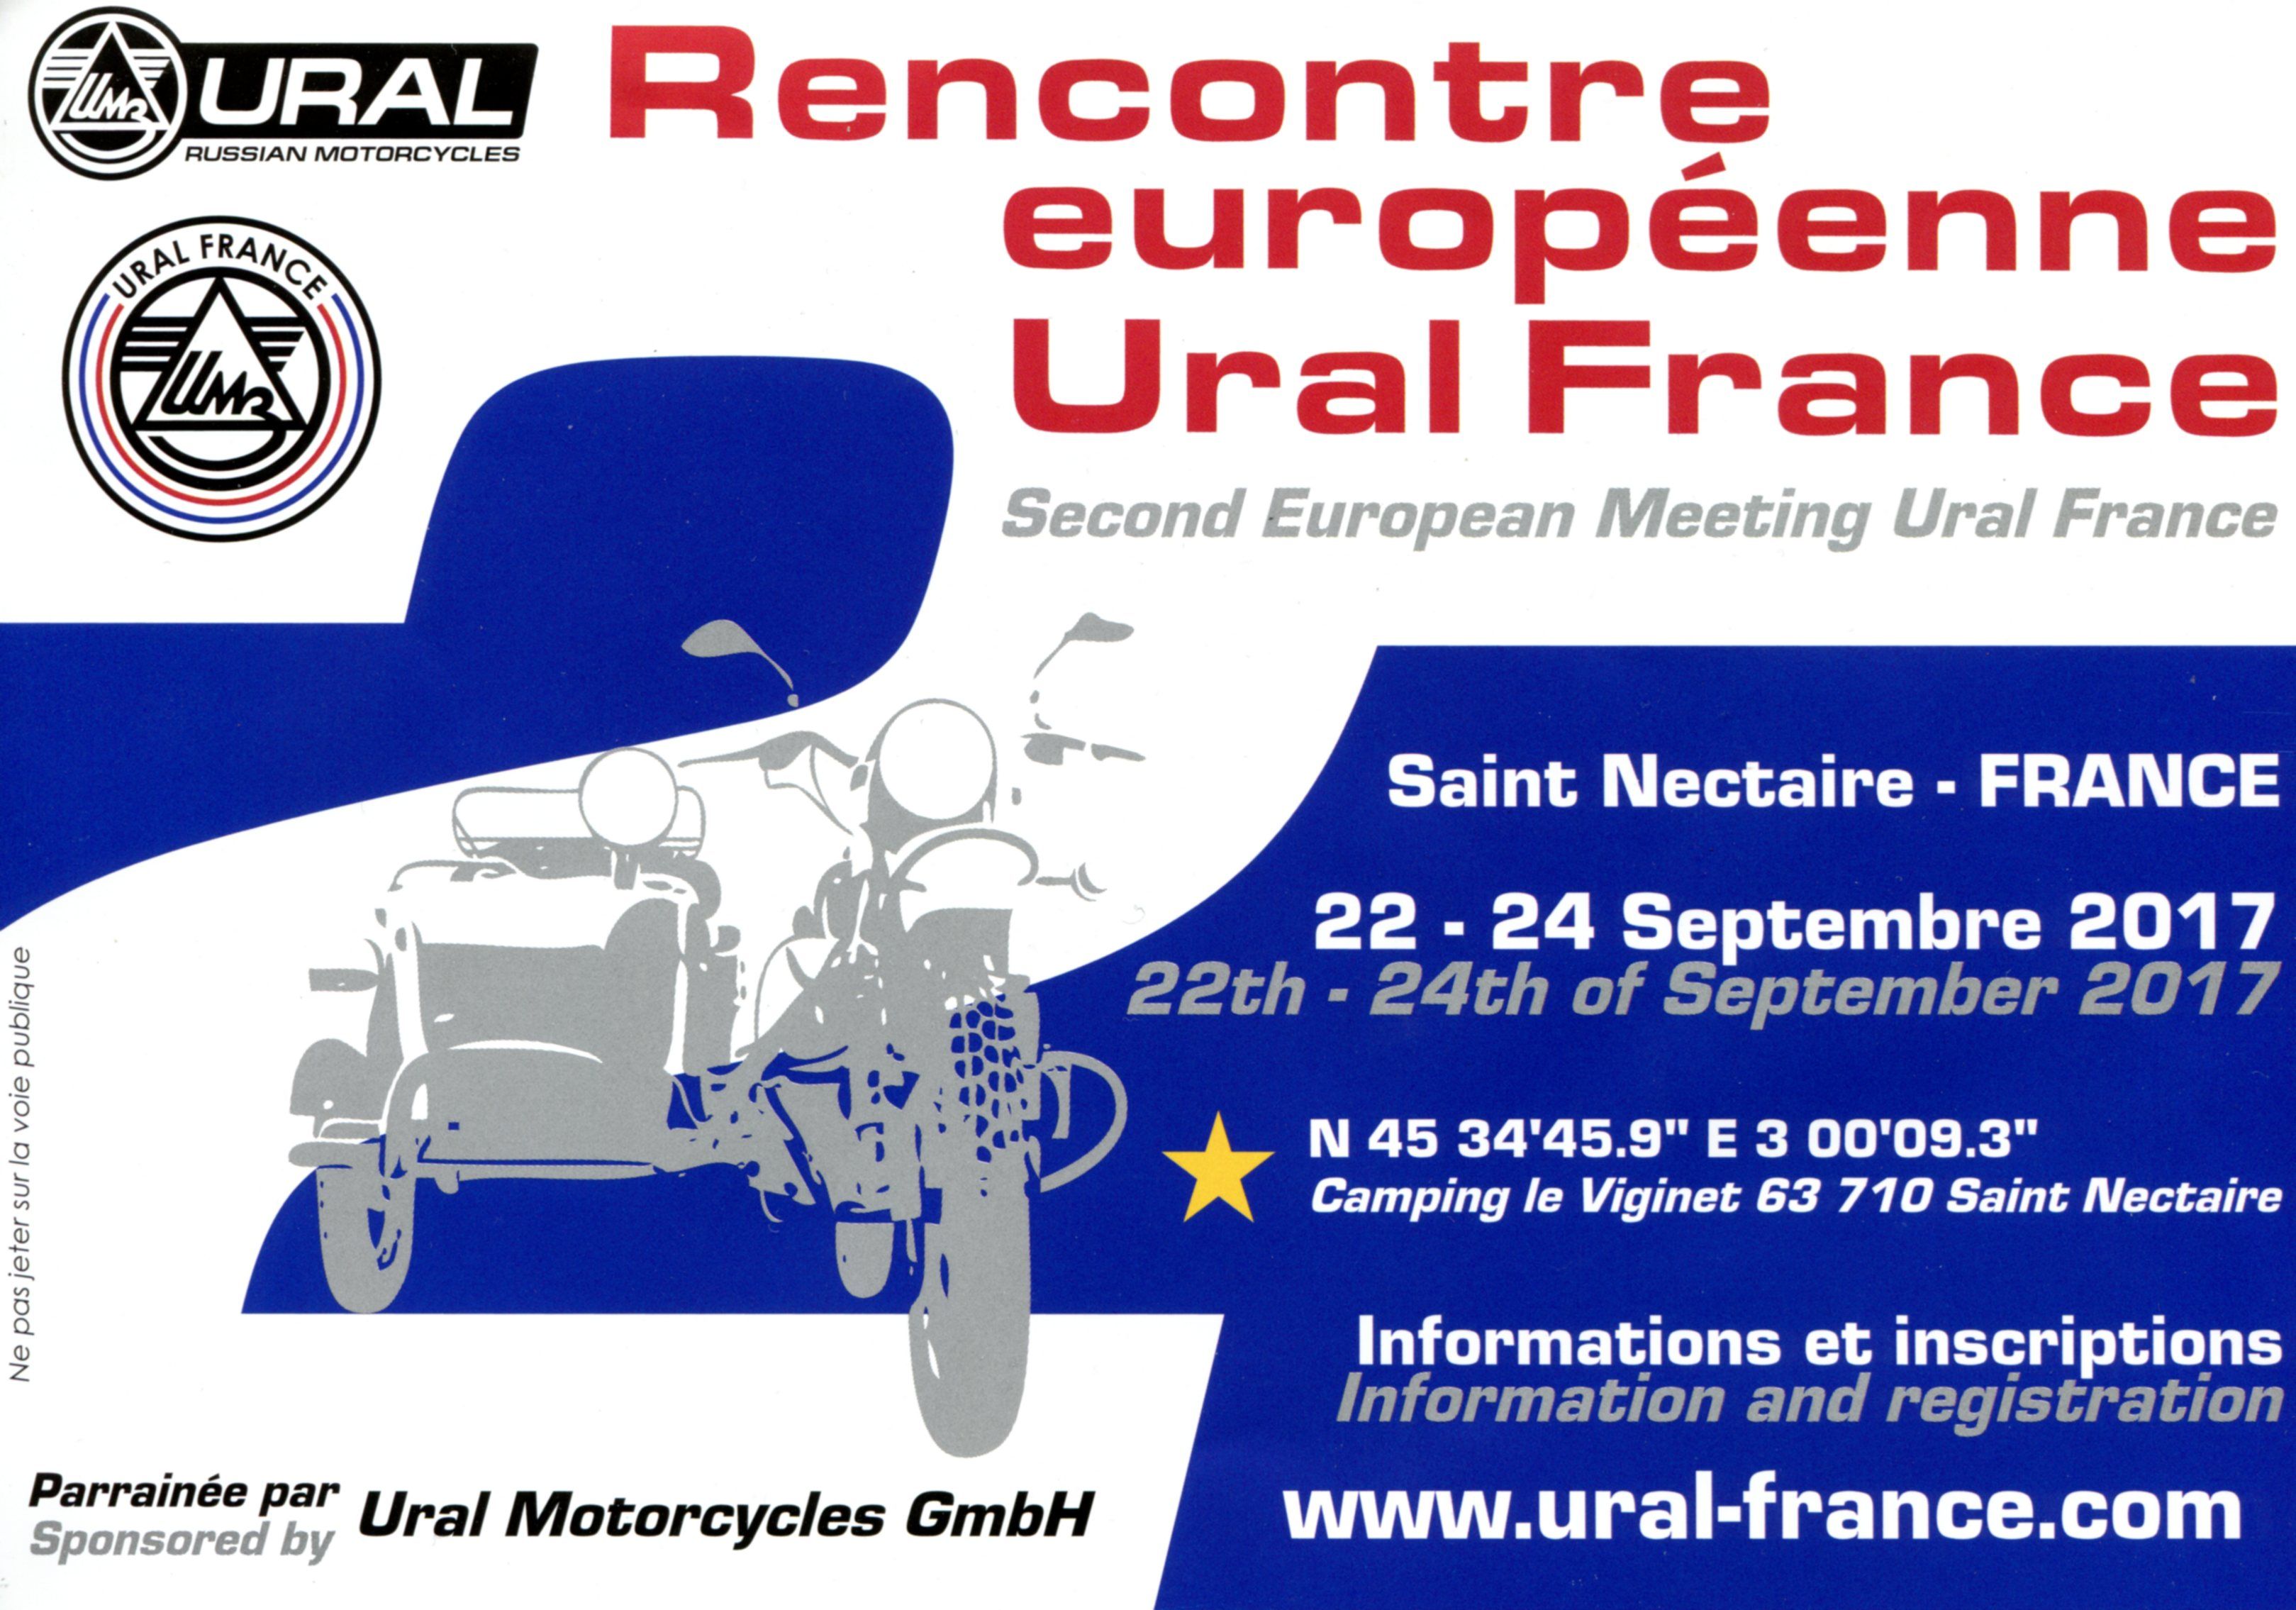 Ural France 2017 meeting